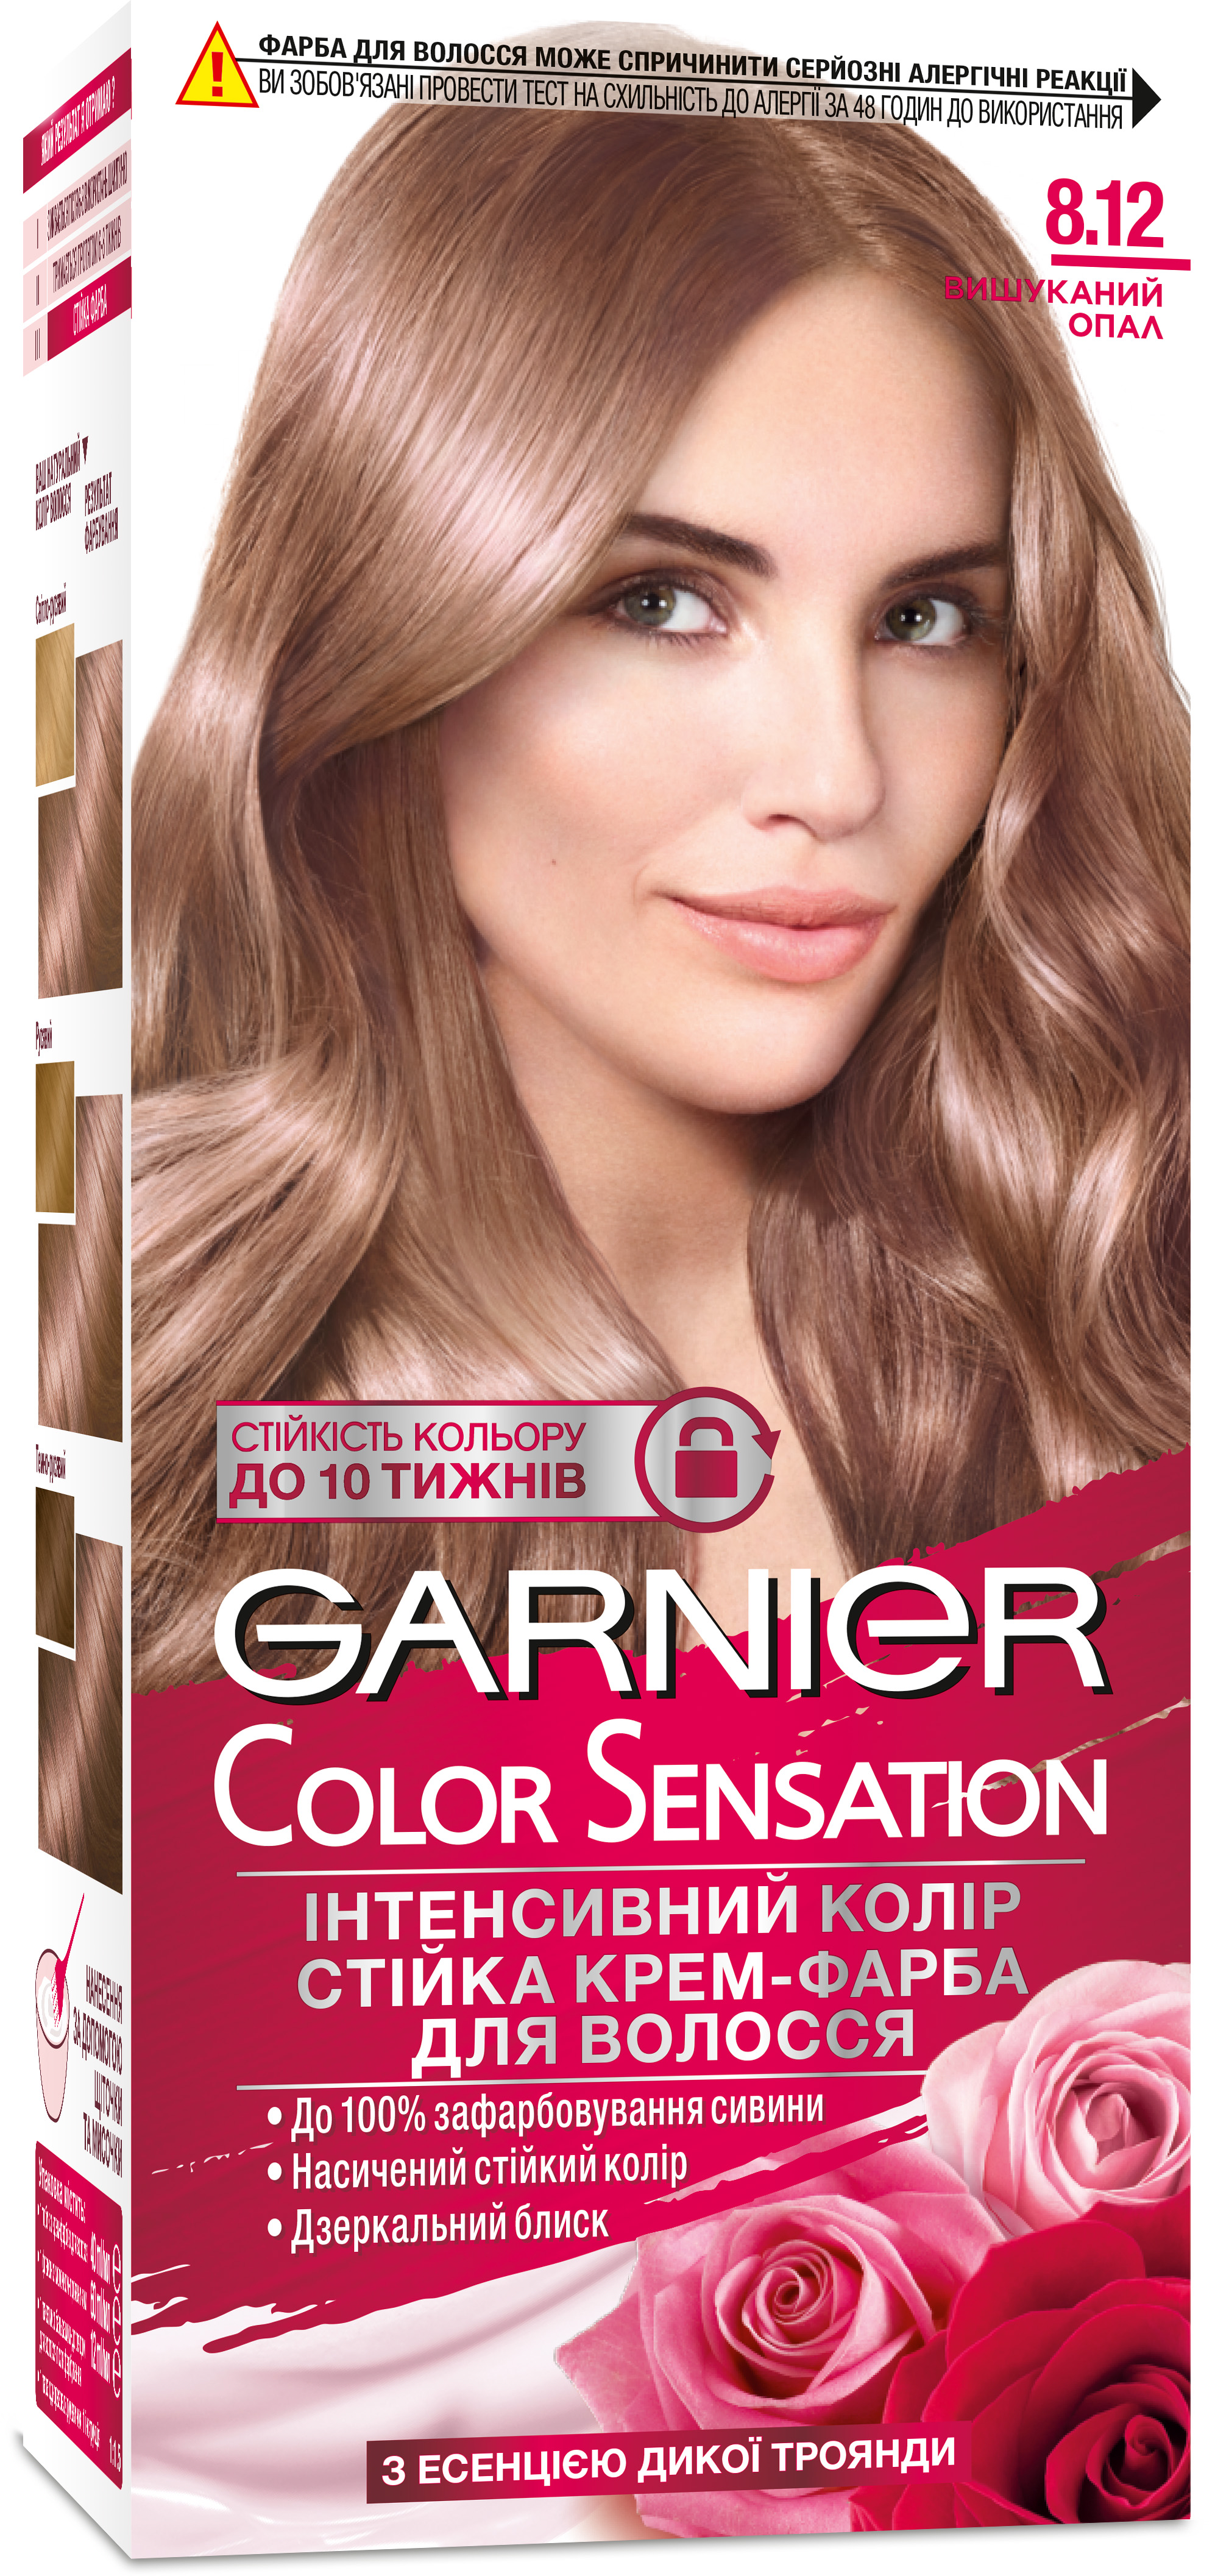 Описание краски для волос Garnier, состав